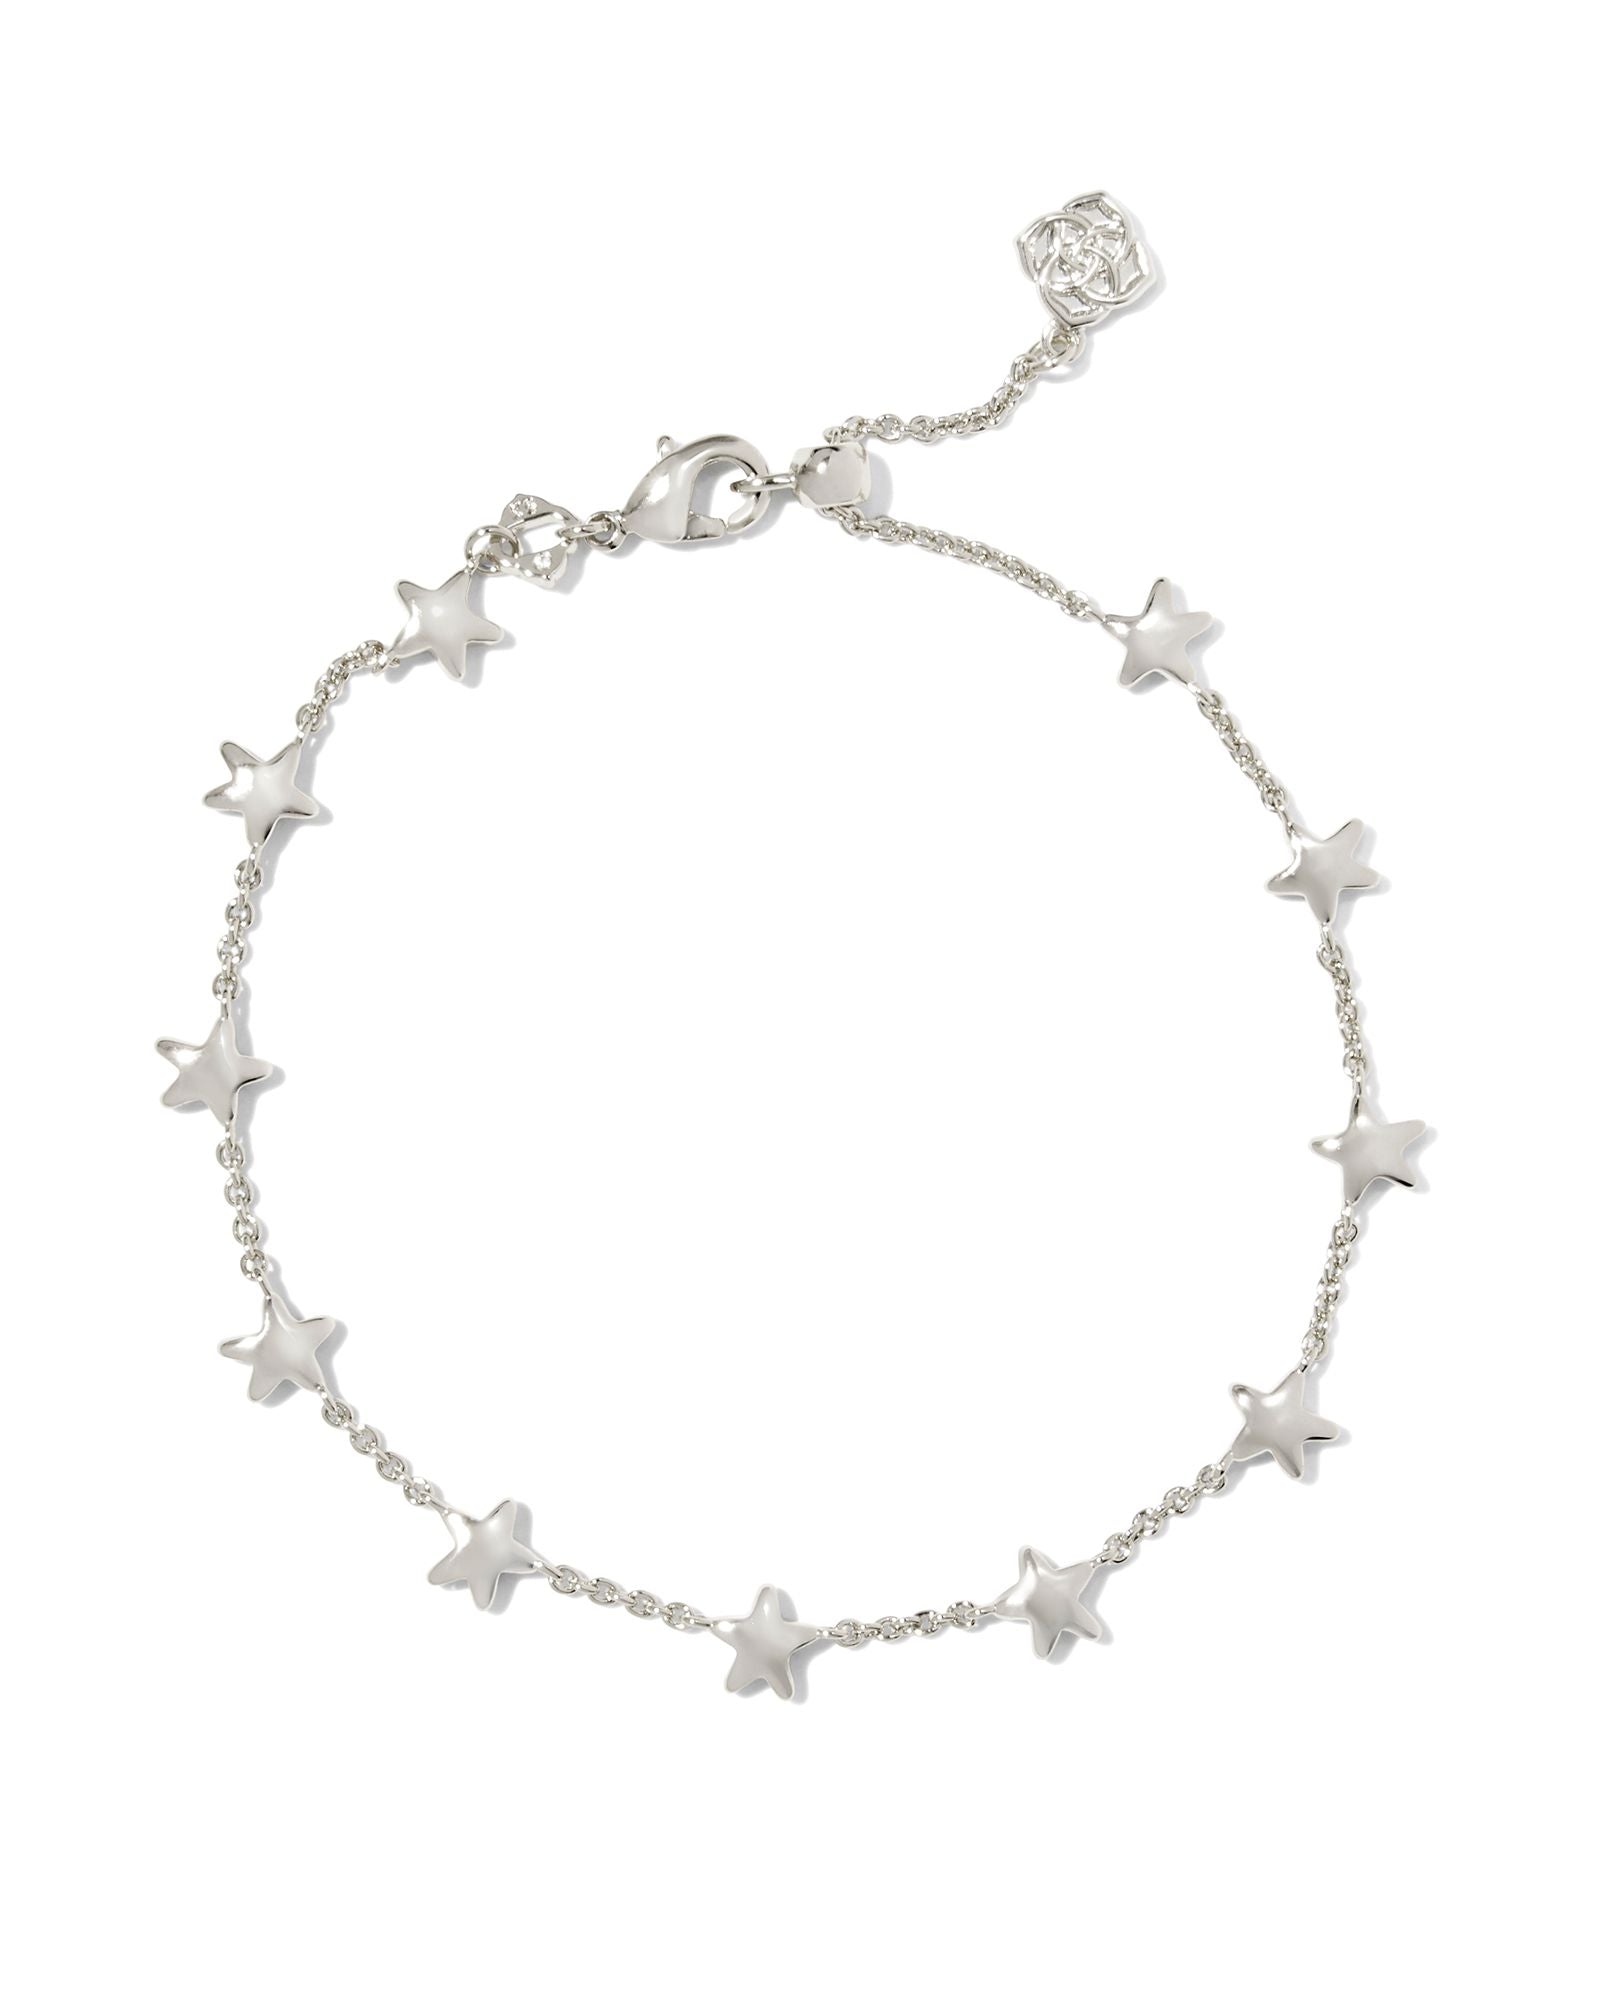 Sierra Star Delicate Chain Bracelet in Silver